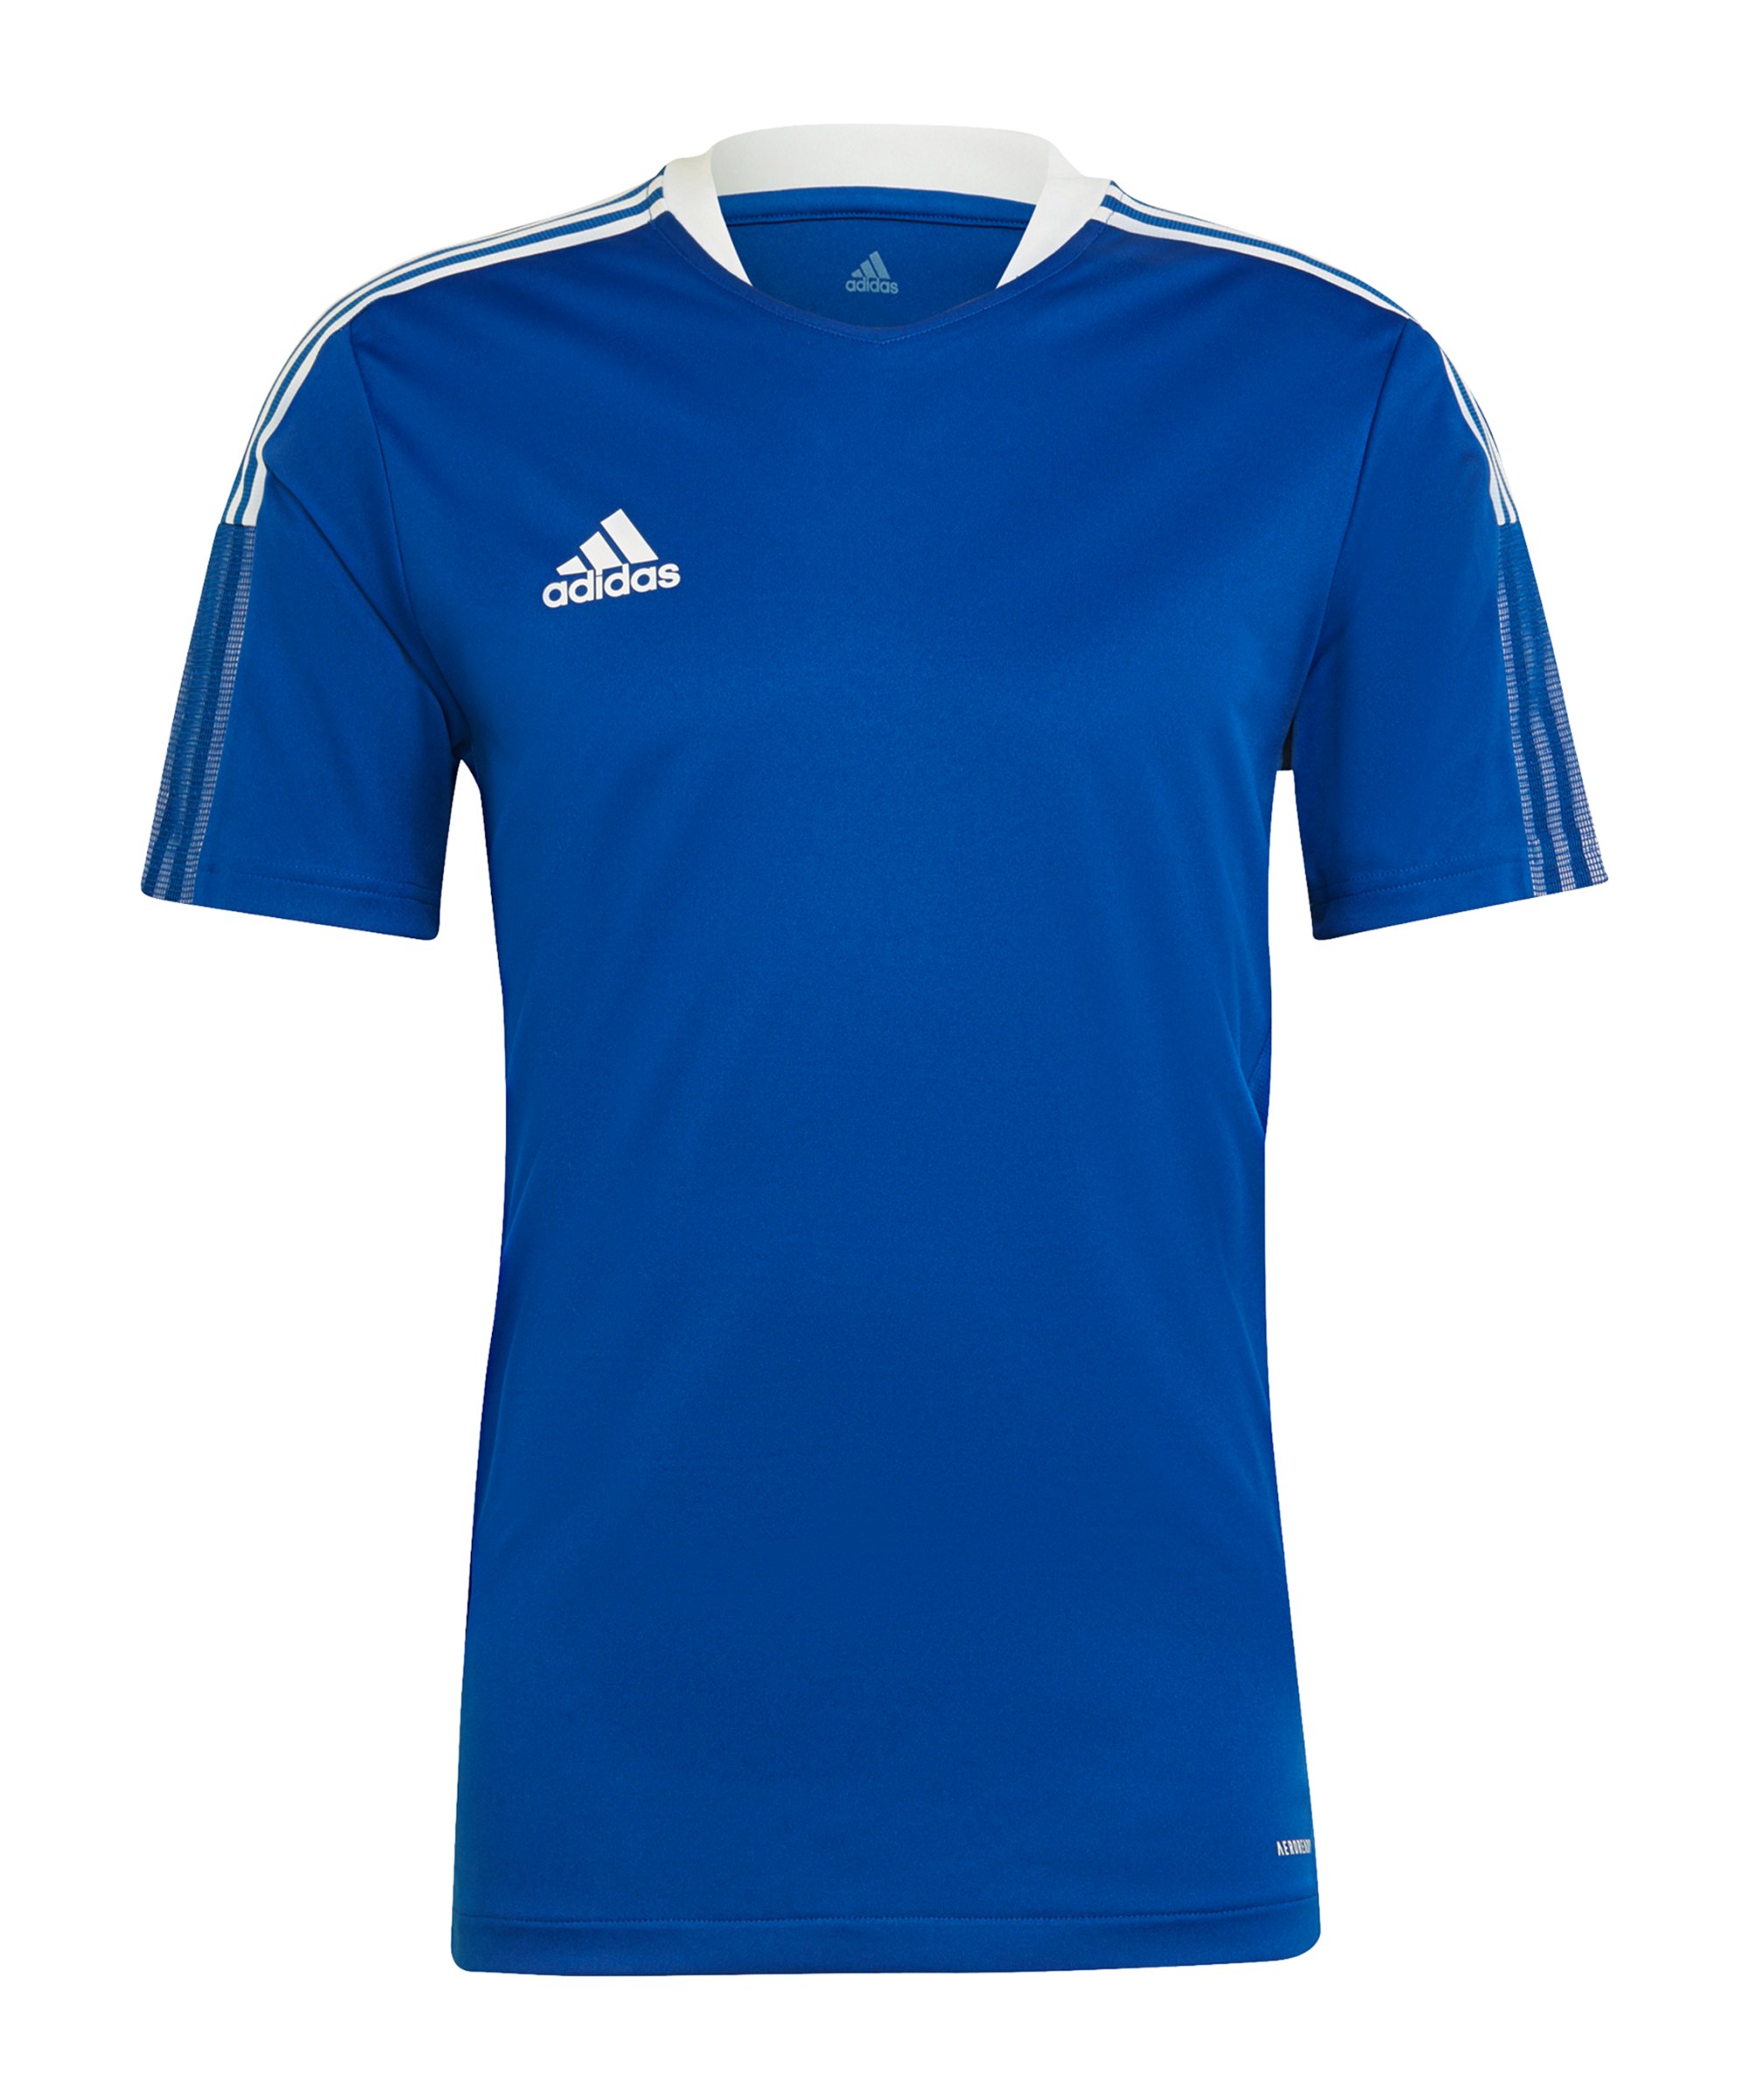 adidas Tiro 21 Trainingsshirt Blau - blau